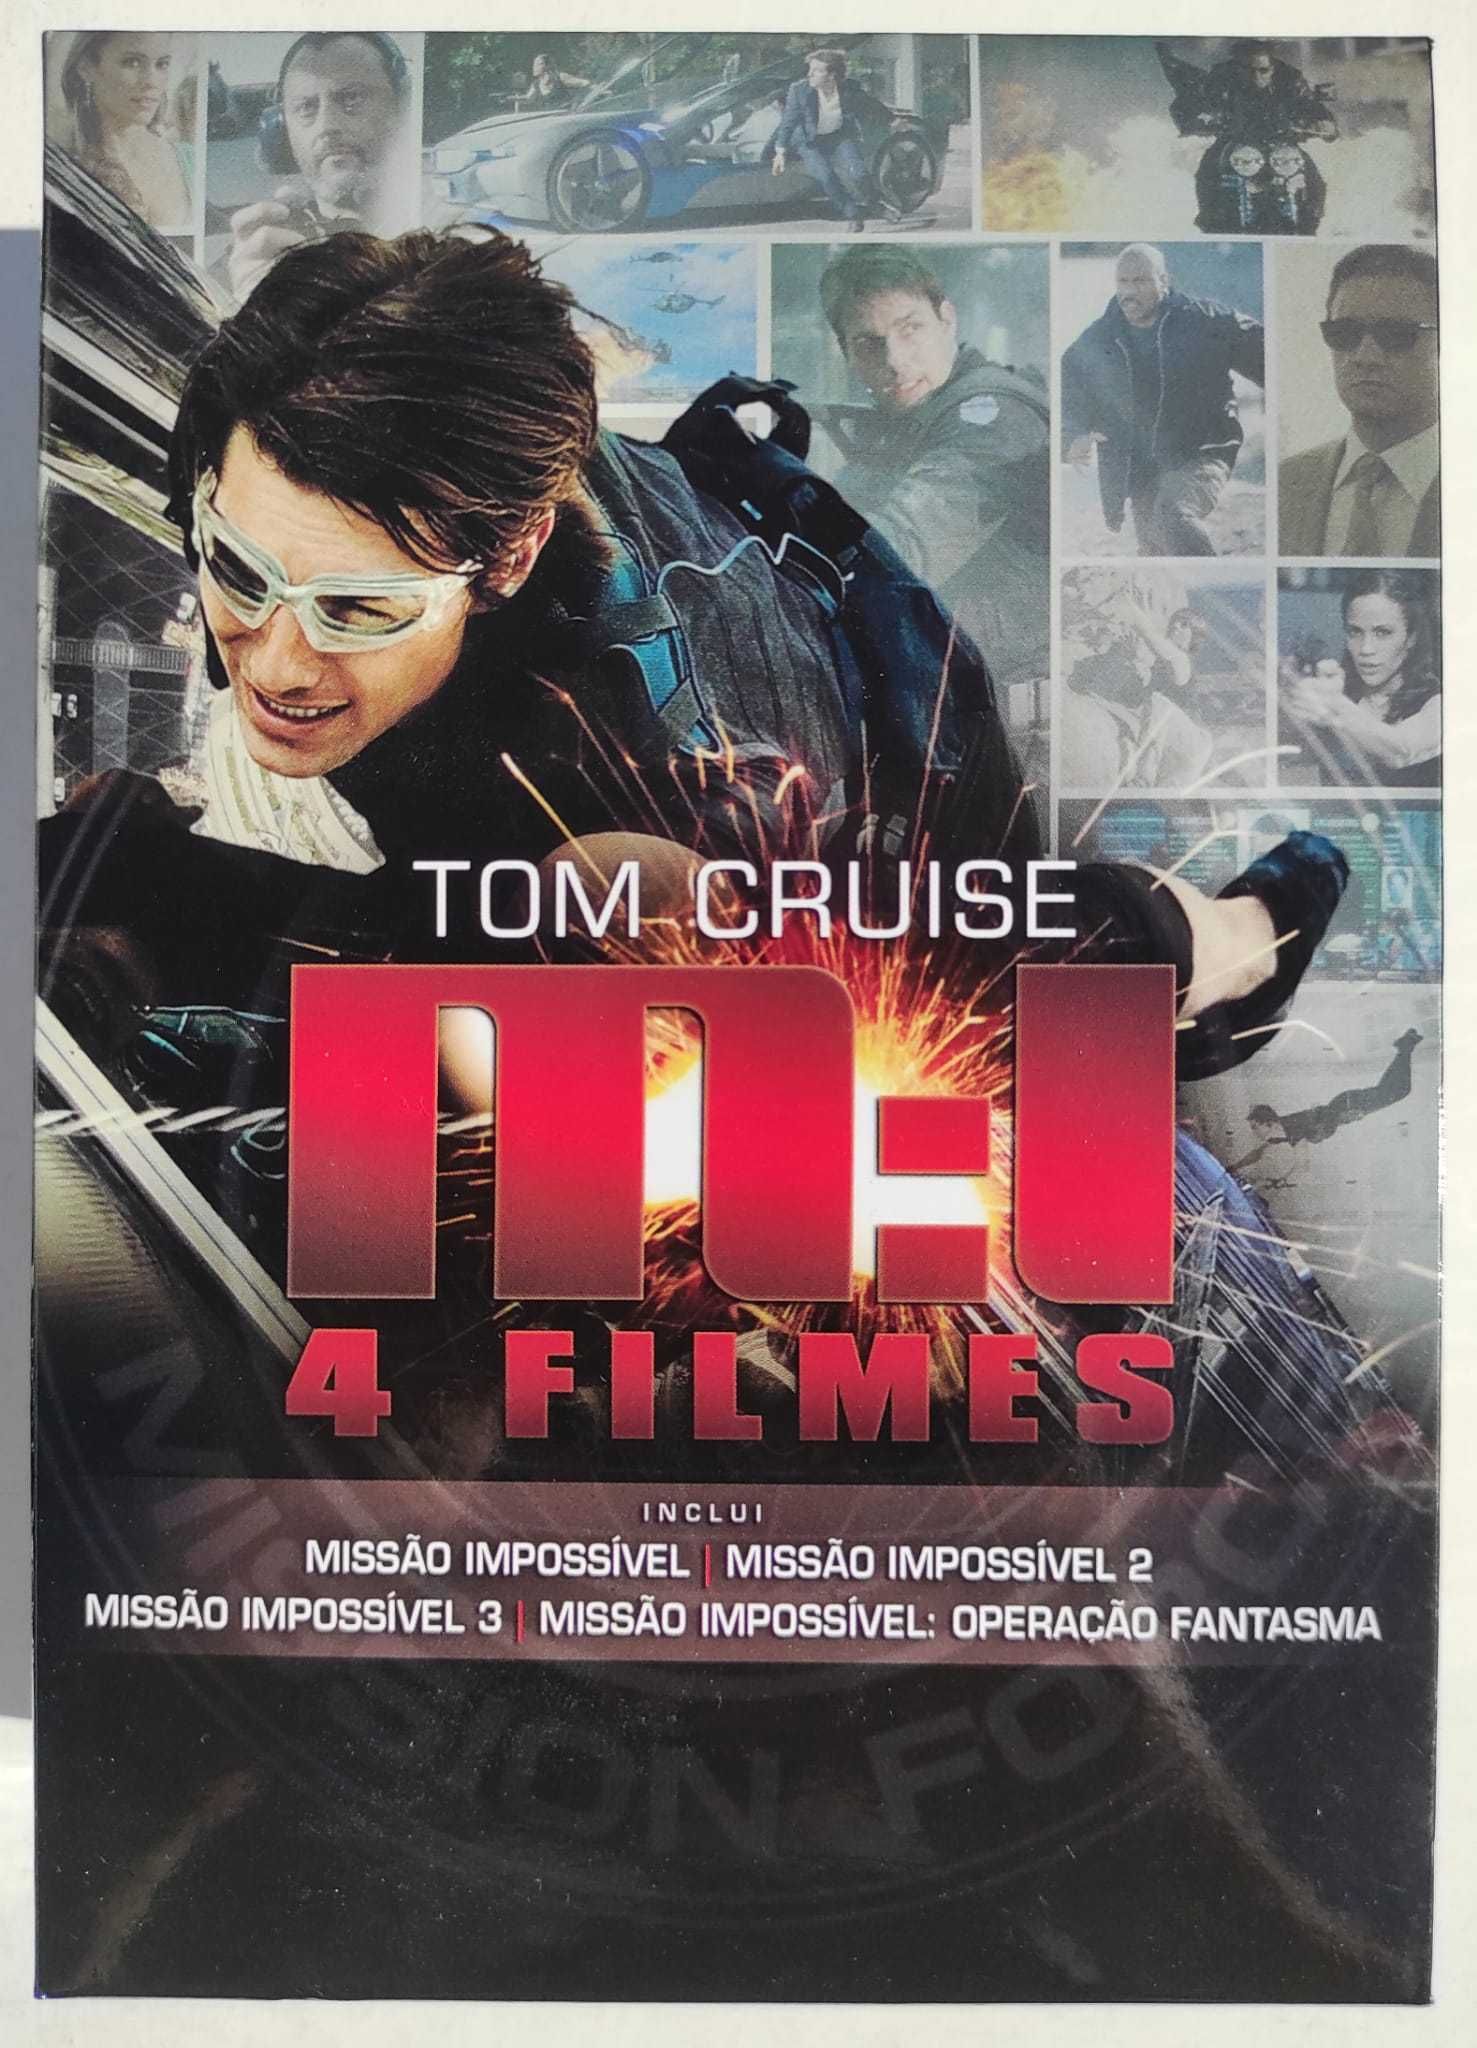 caixa de quatro dvd "Missão impossível", com Tom Cruise